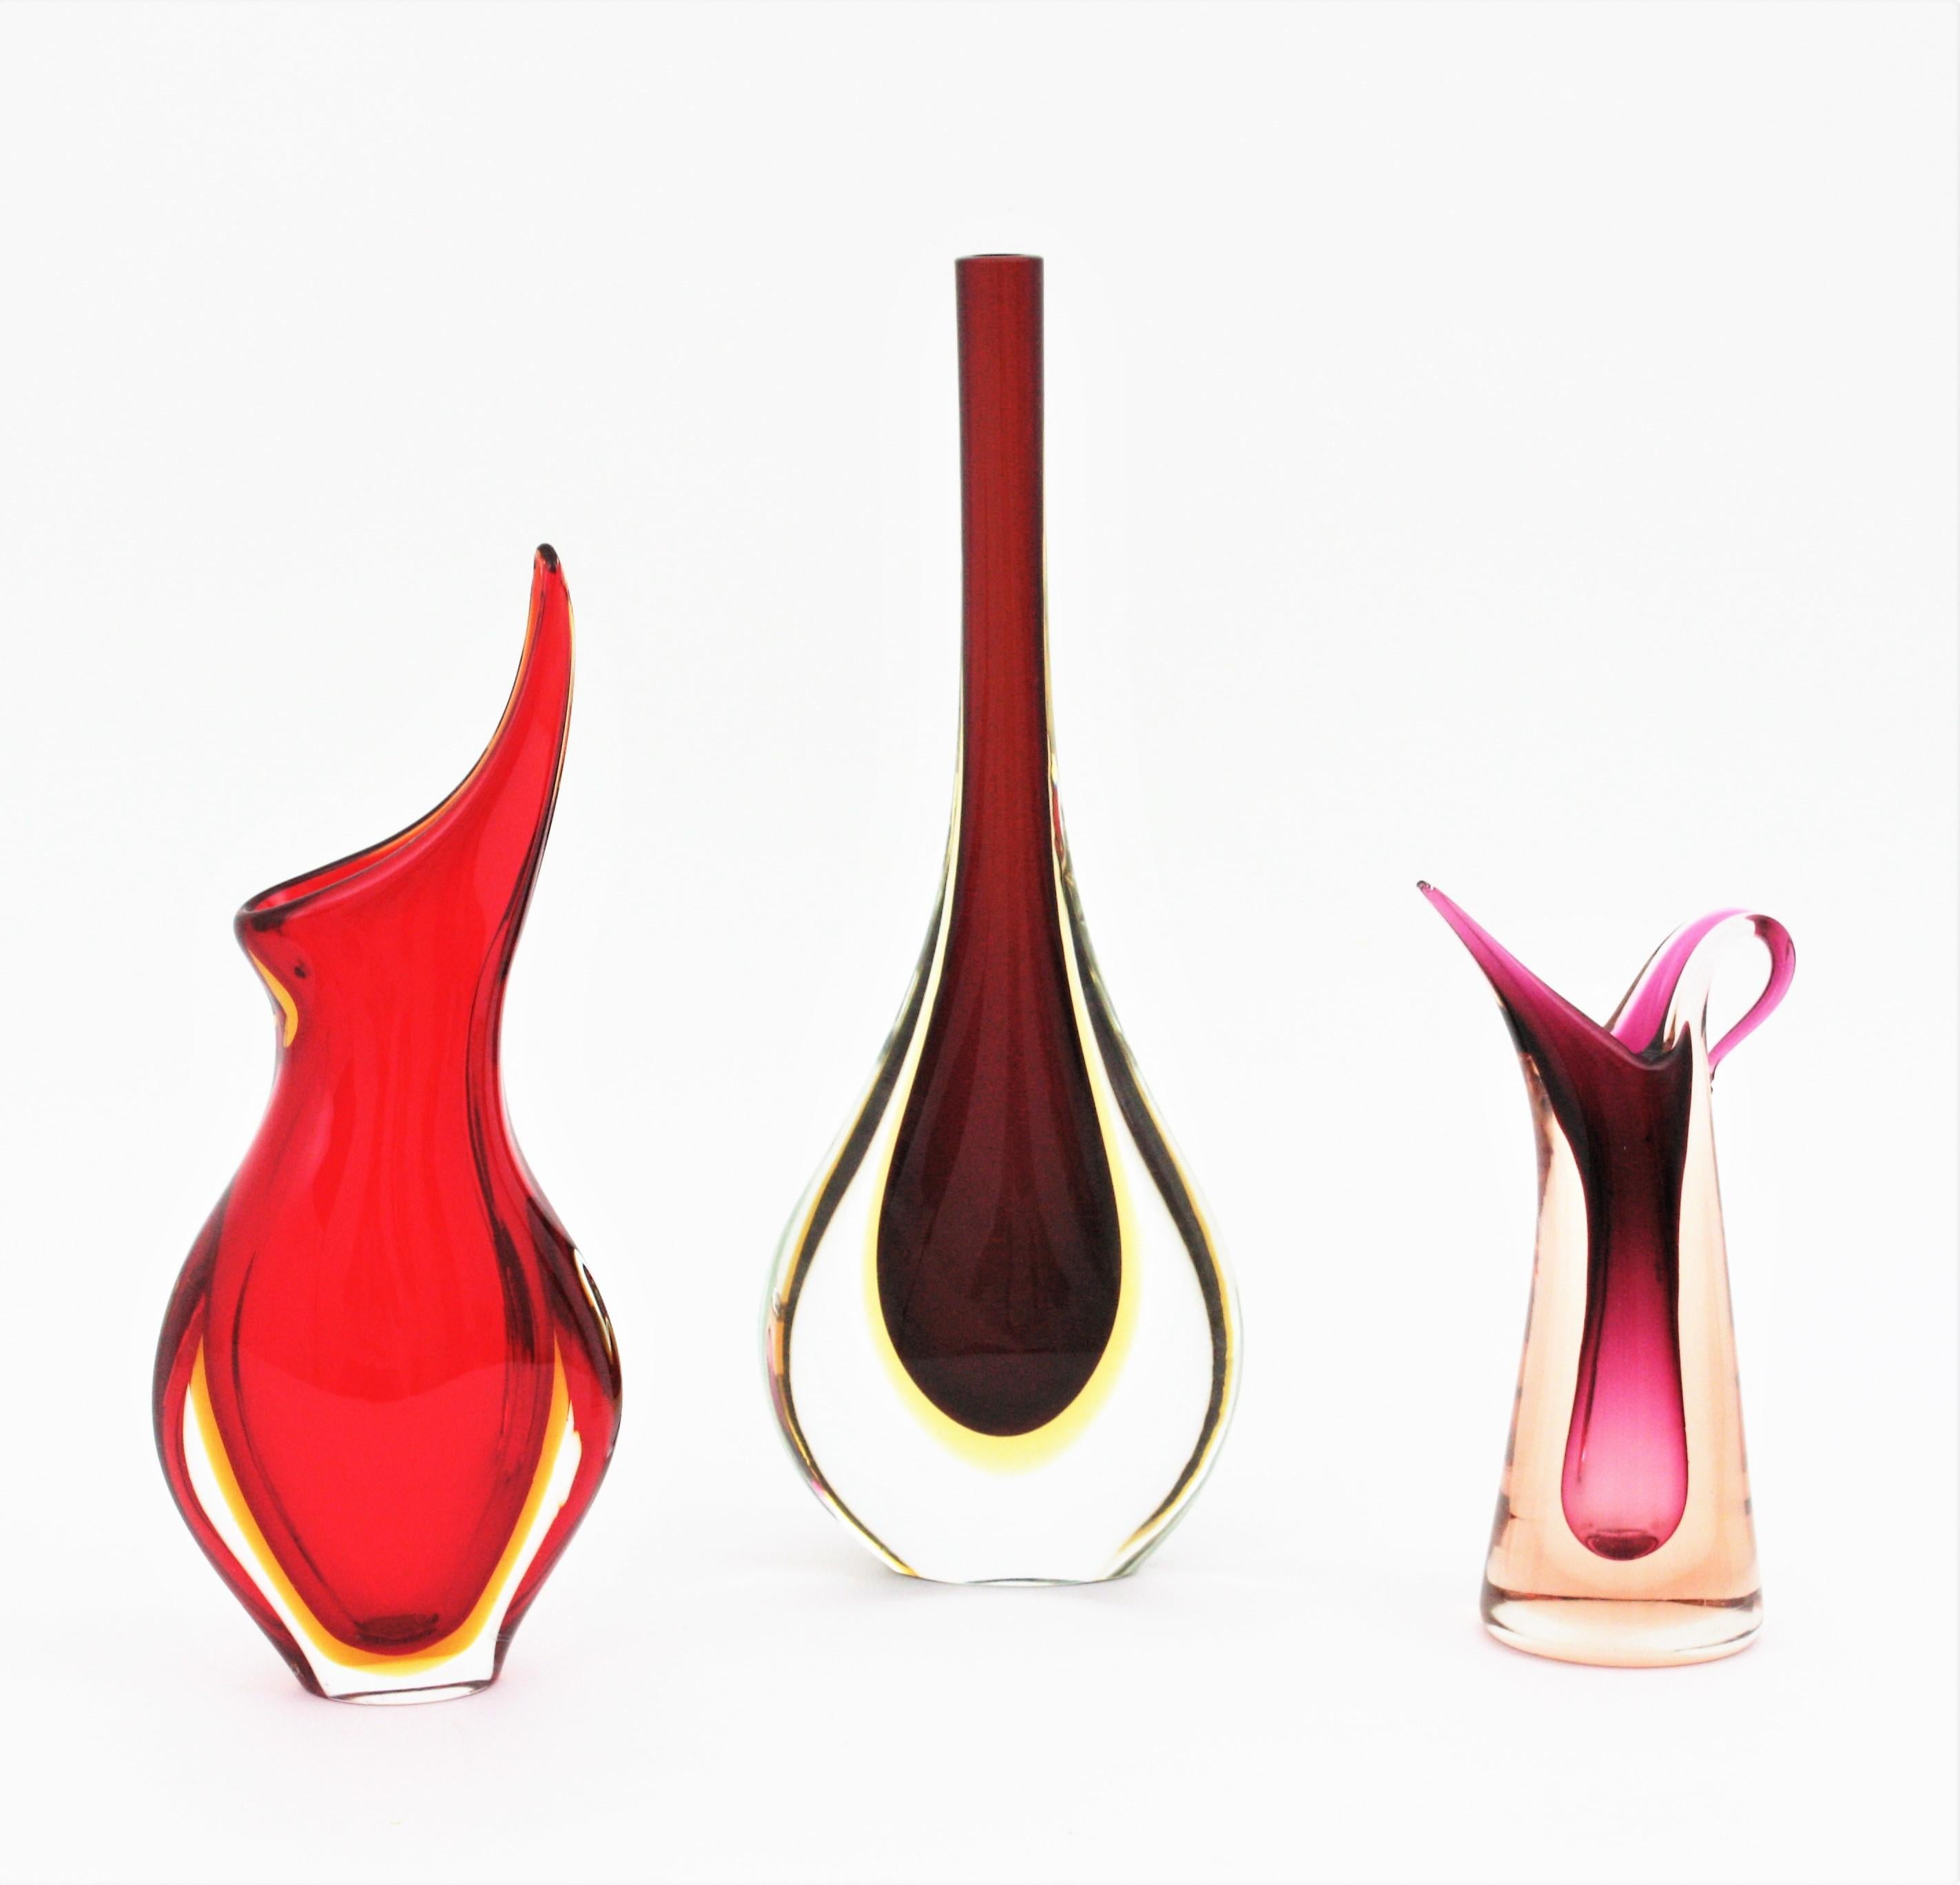 Magnifique vase en verre de Murano soufflé à la main, de couleur rouge et jaune. Conçu par Flavio Poli et fabriqué par Seguso Vetri d'Arte. Italie, années 1950.
Verre rouge avec une couche de verre jaune encastrée dans du verre clair selon la